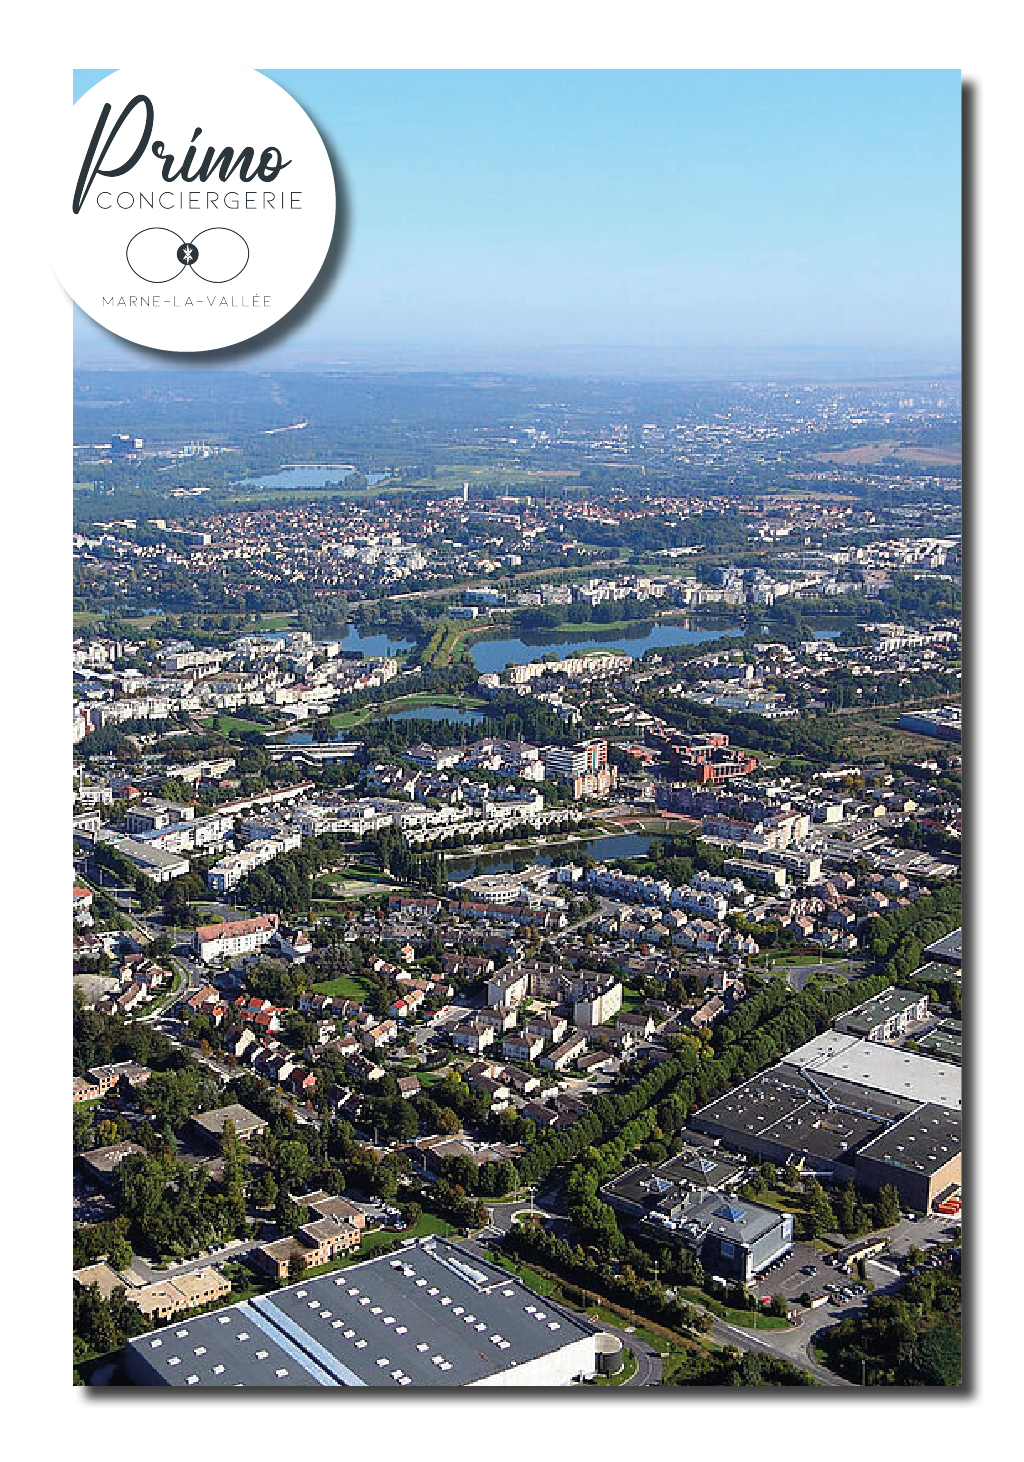 Photo, vue aérienne sur la ville de Marne-la-vallée et de son architecture